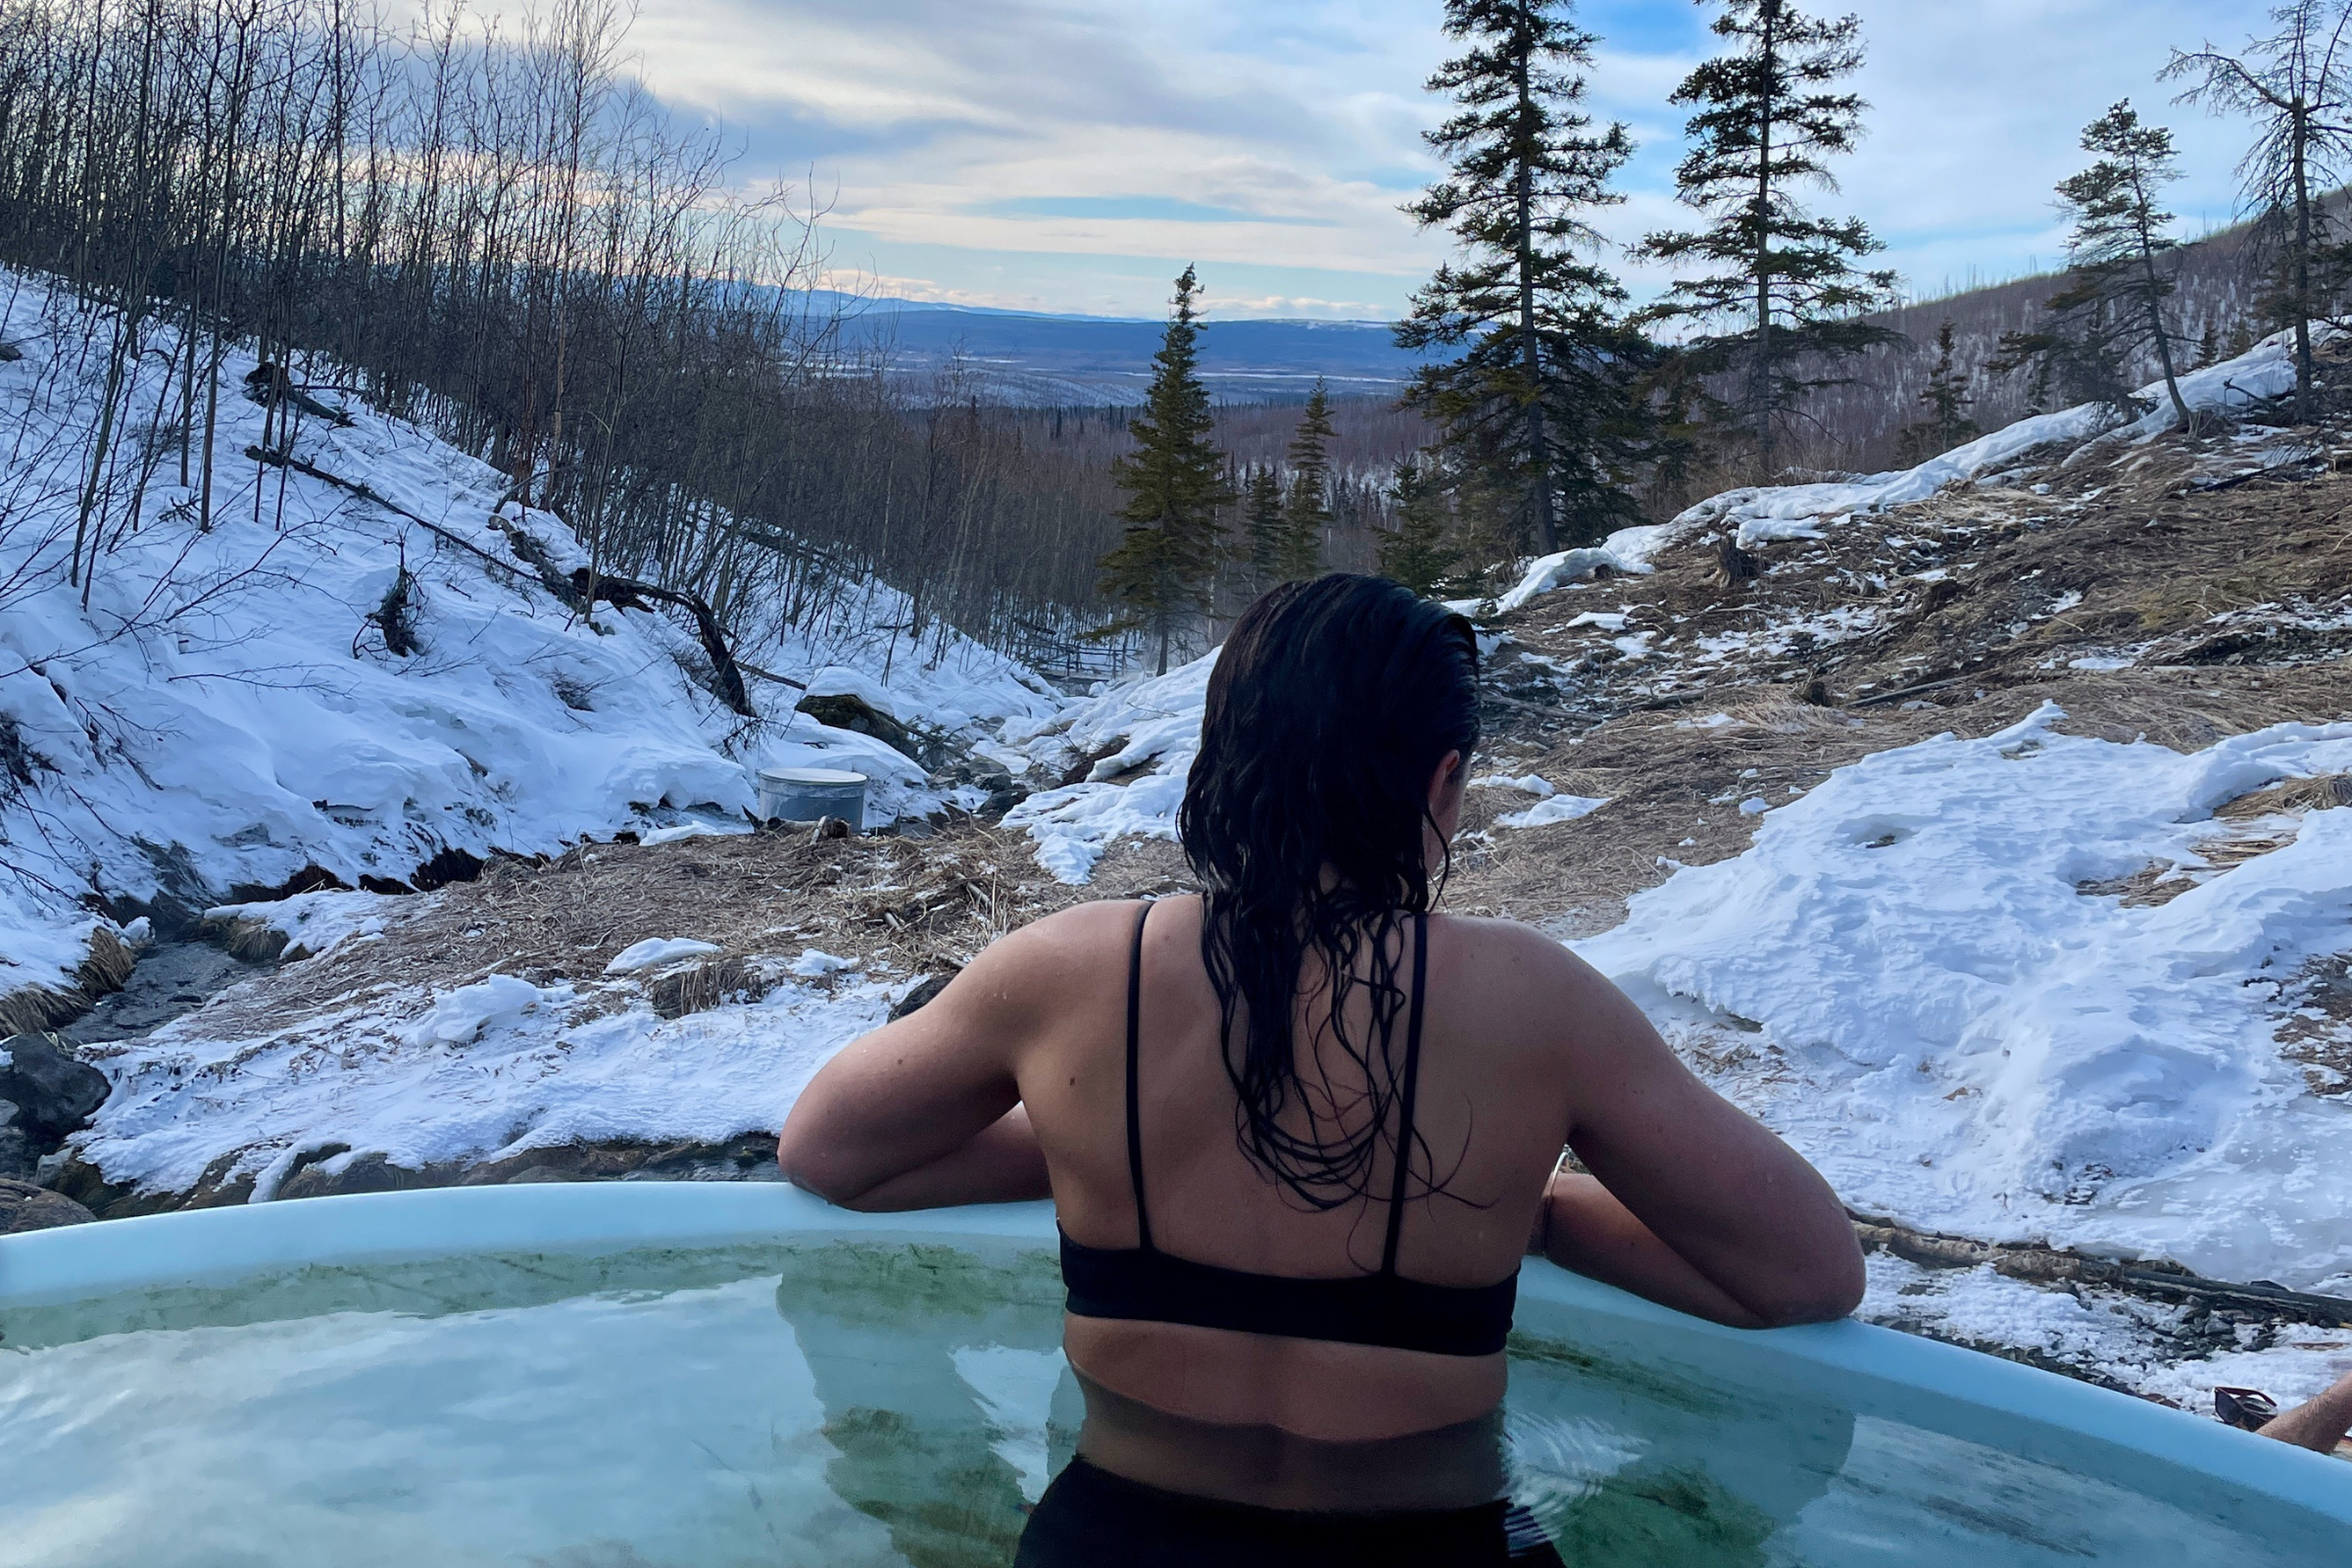 Tolovana Hot Springs Winter Getaway | Alaska